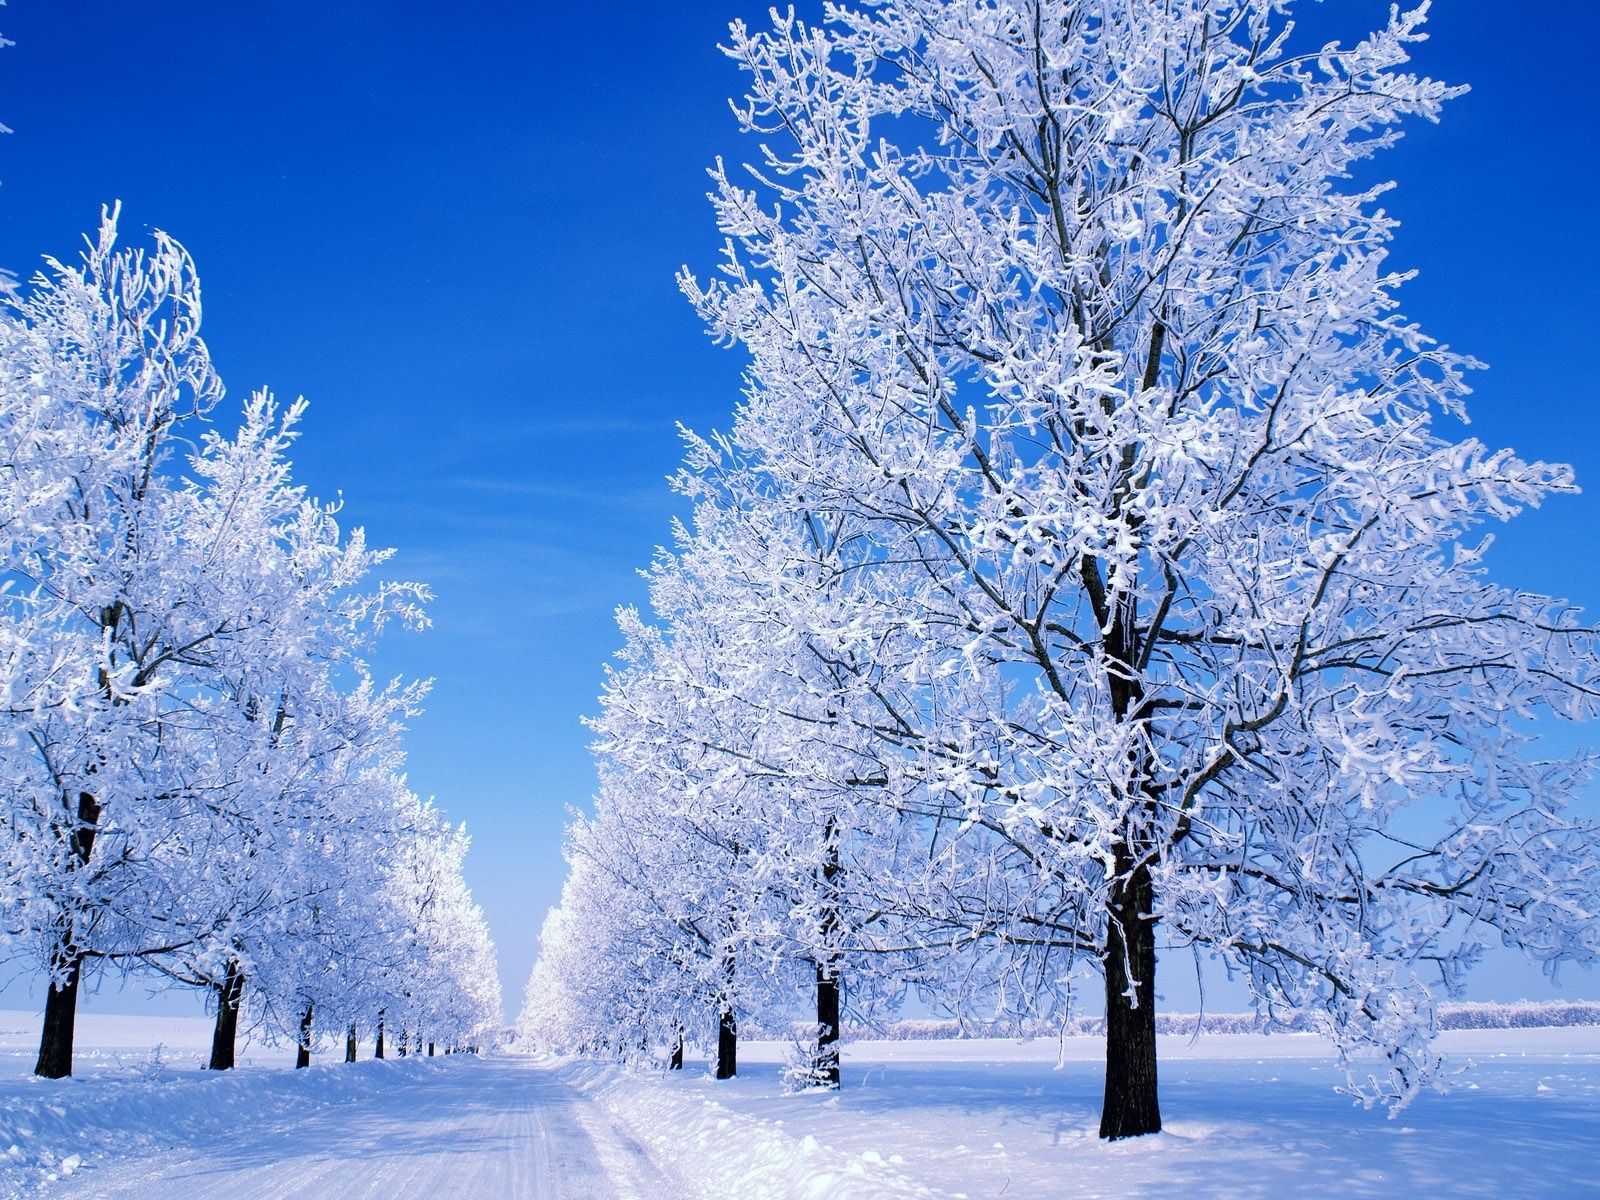 Frosty. Winter snow wallpaper, Winter scenery, Winter trees